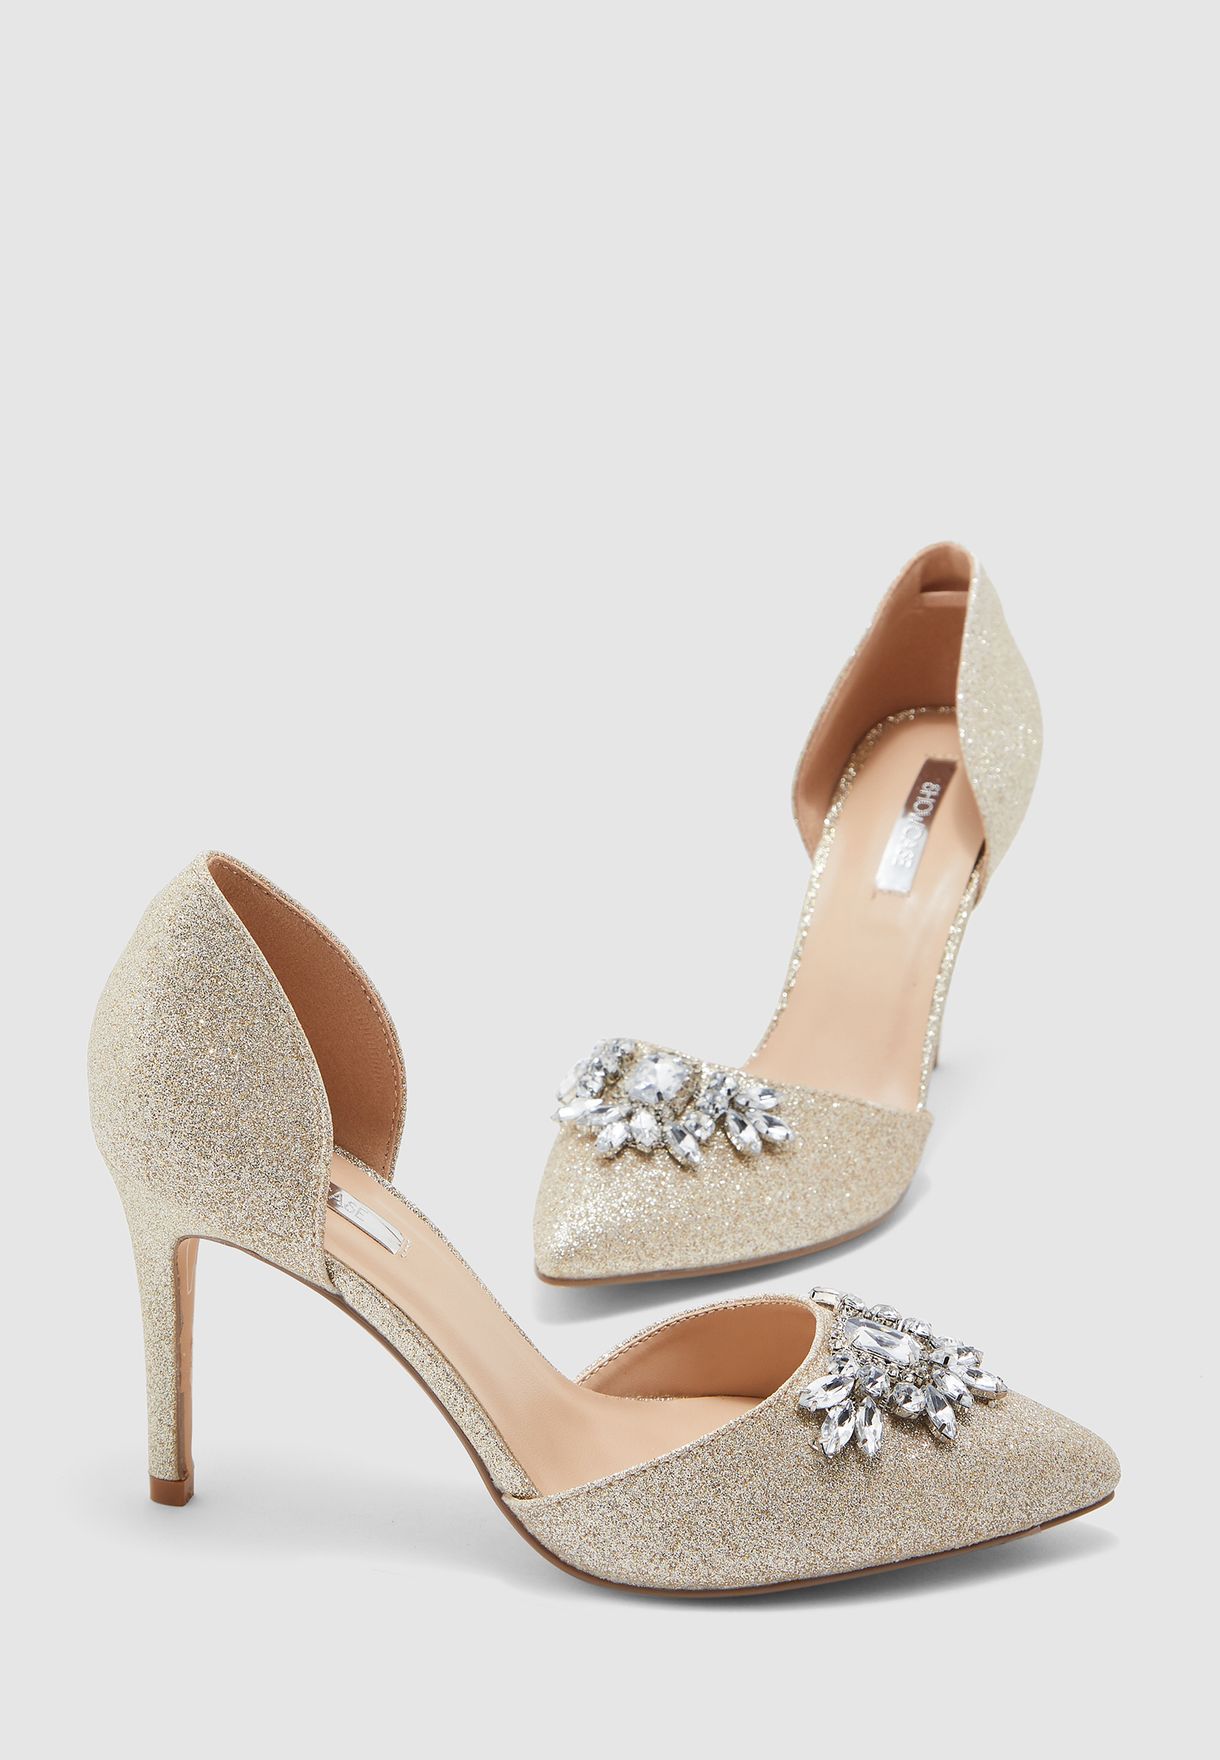 dorothy perkins bridesmaid shoes